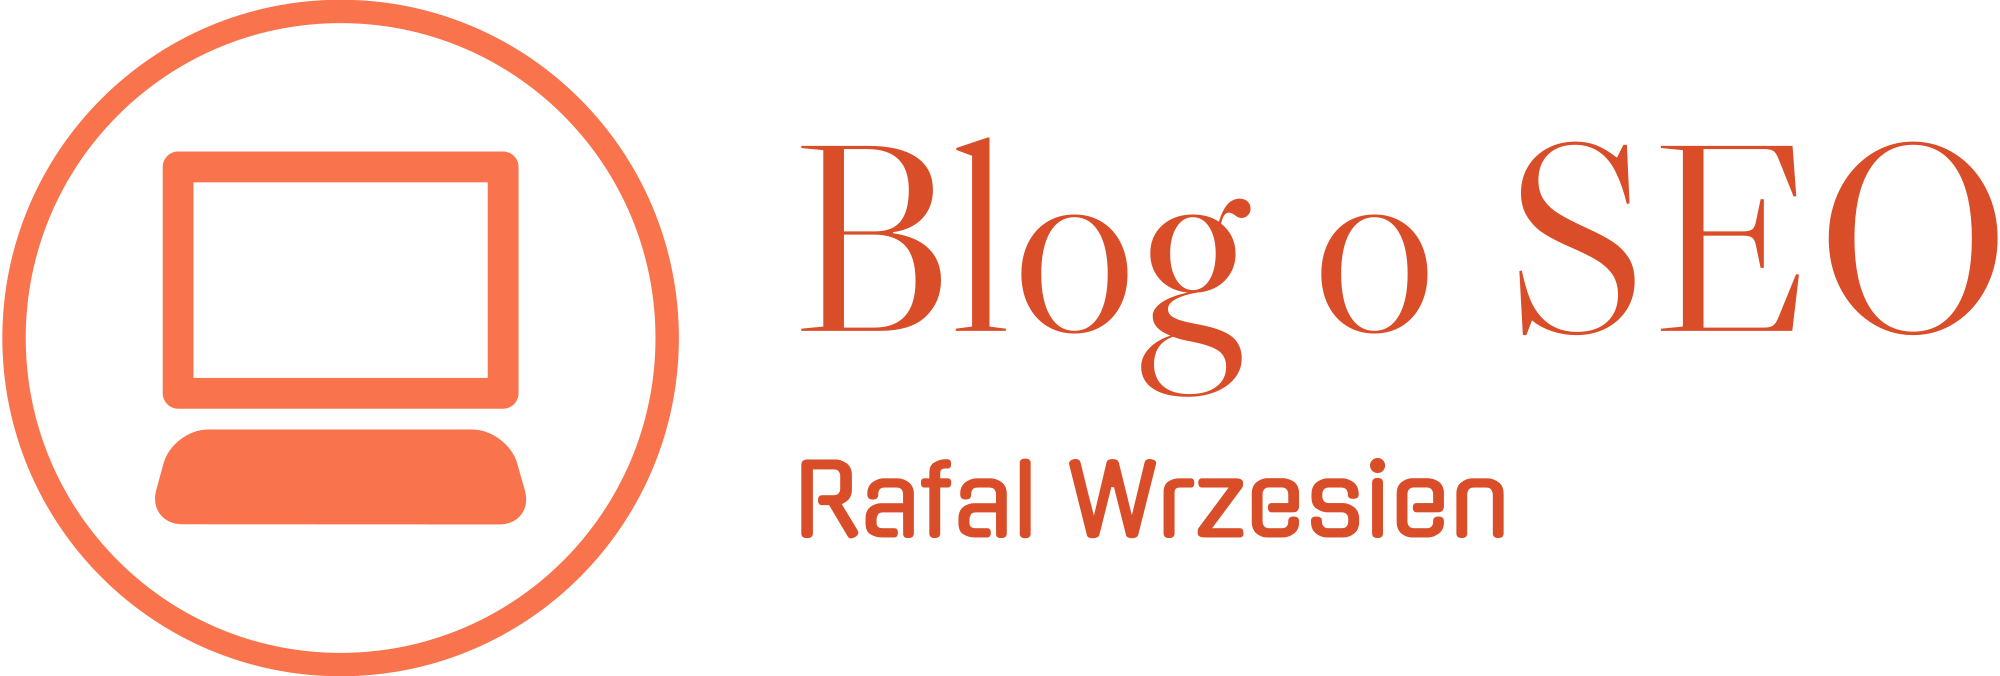 Rafał Wrzesień - mój blog o SEO